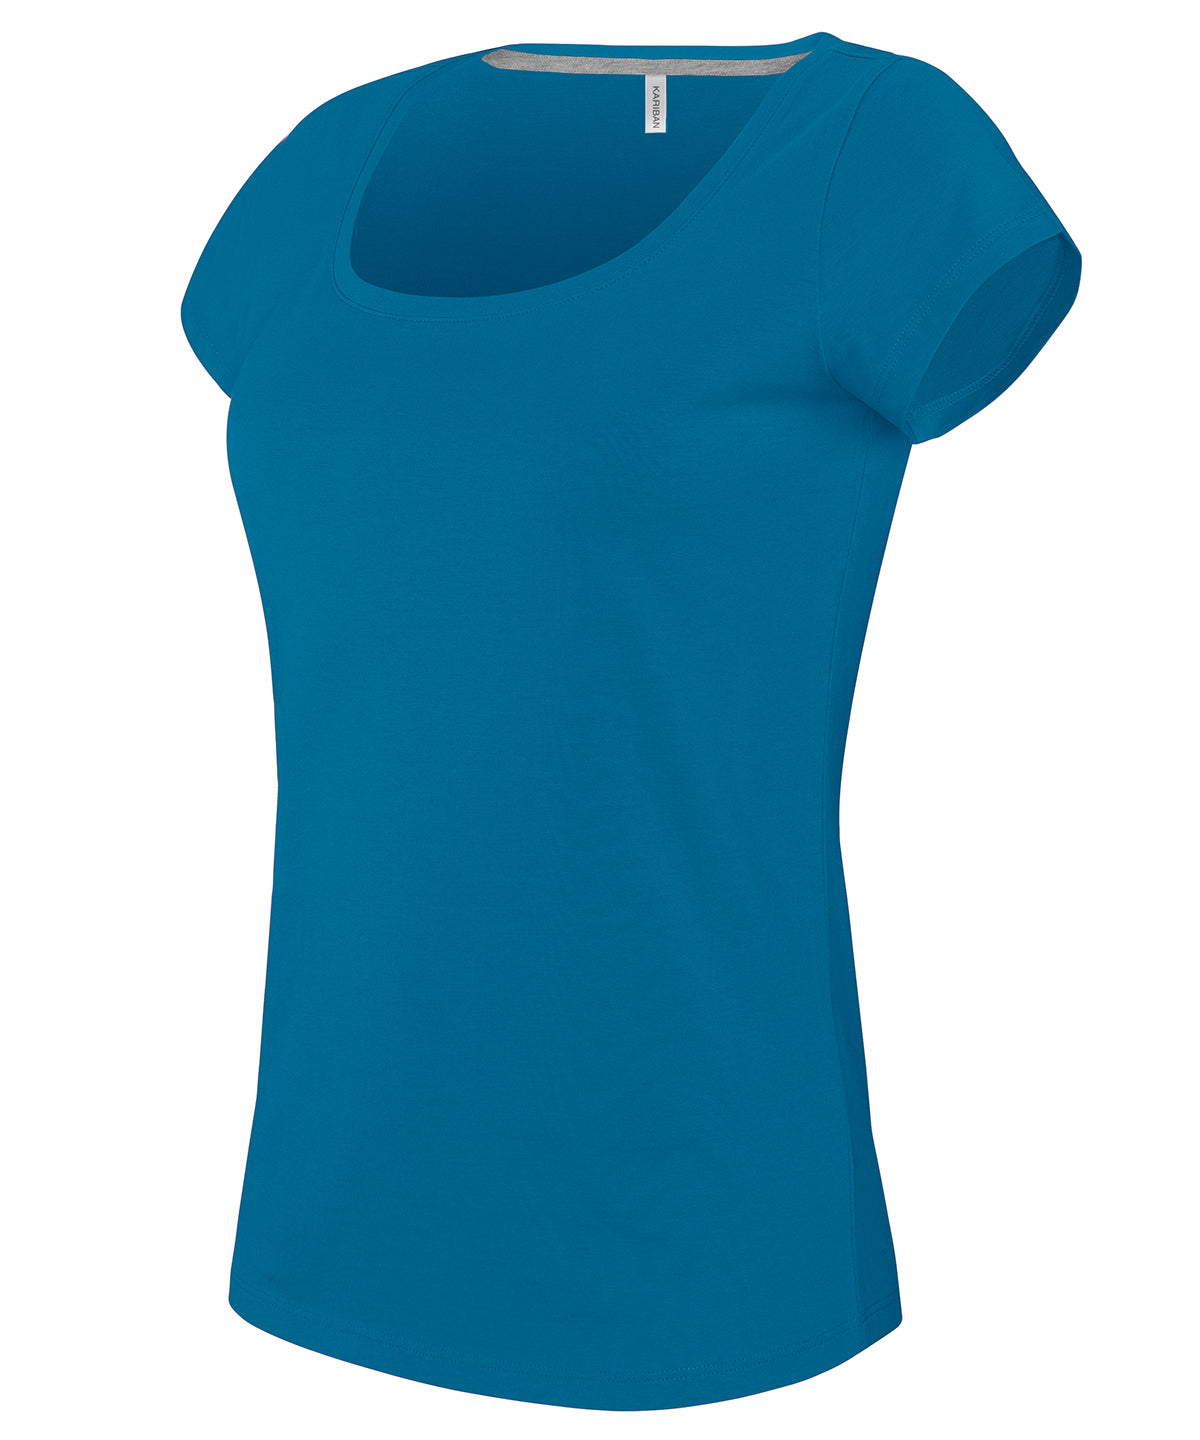 Stuttermabolir - Ladies’ Boat Neck Short-sleeved T-shirt